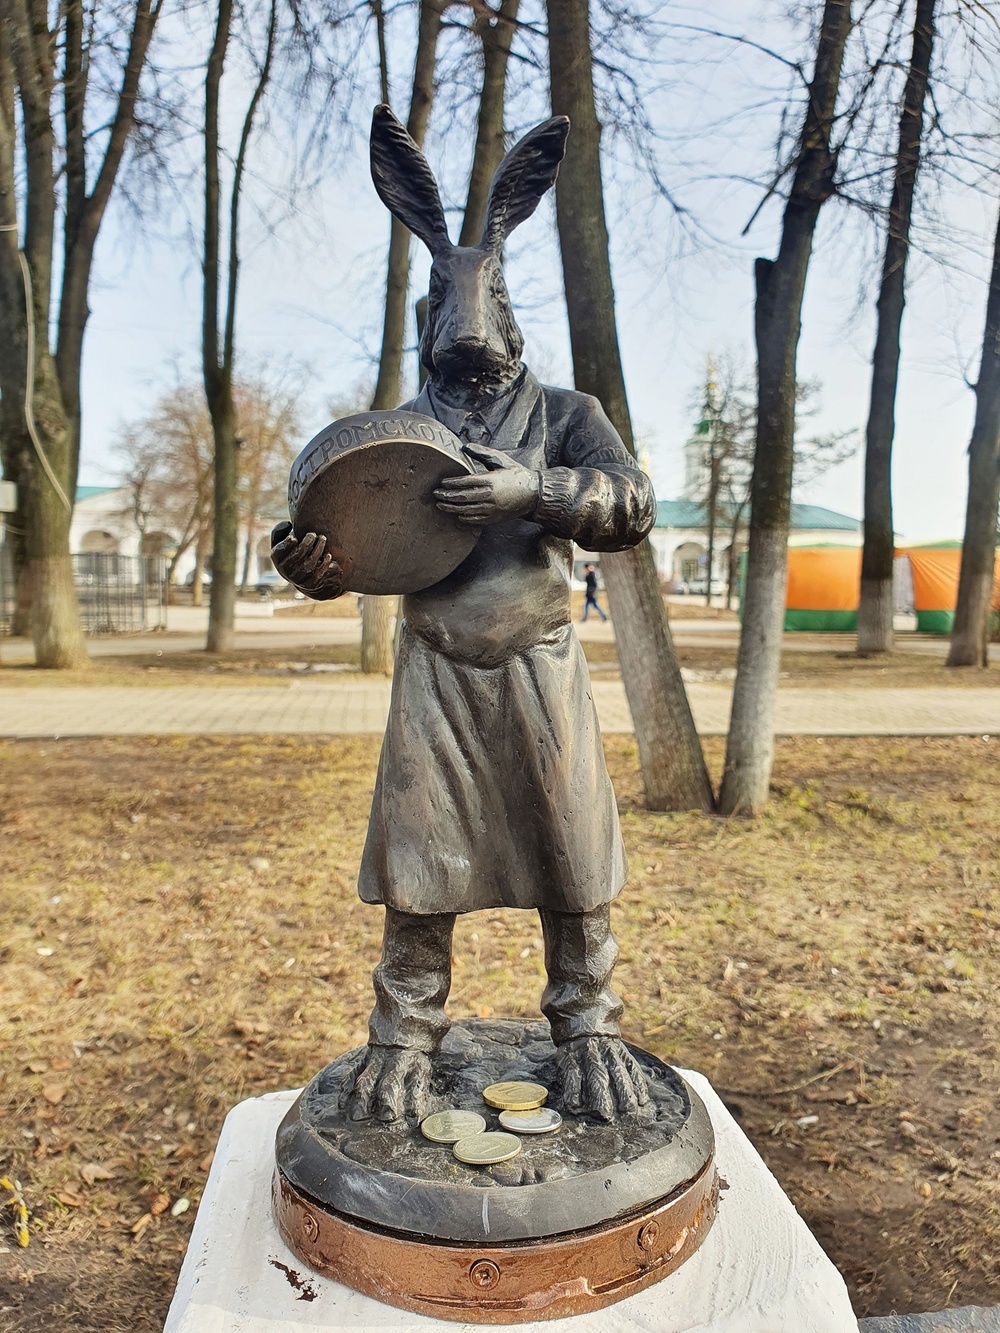 В Костроме появился квест для туристов - "Мазайские зайцы"